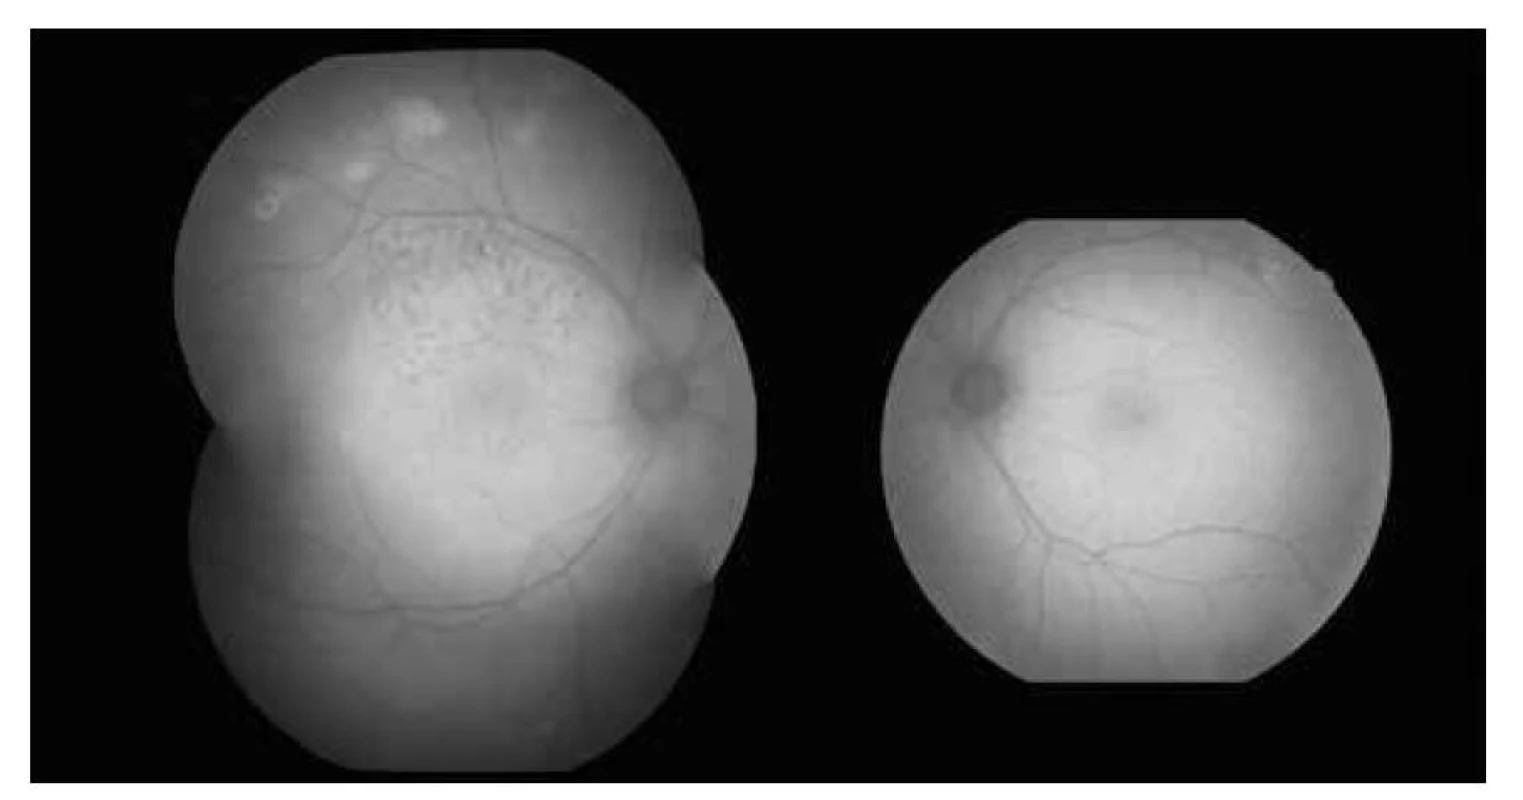 Fundusautofluorecsencia – hyperflourescencie v mieste kalcifikácii a na pravom oku vidno
stopy po fokálnej laserkoagulácii